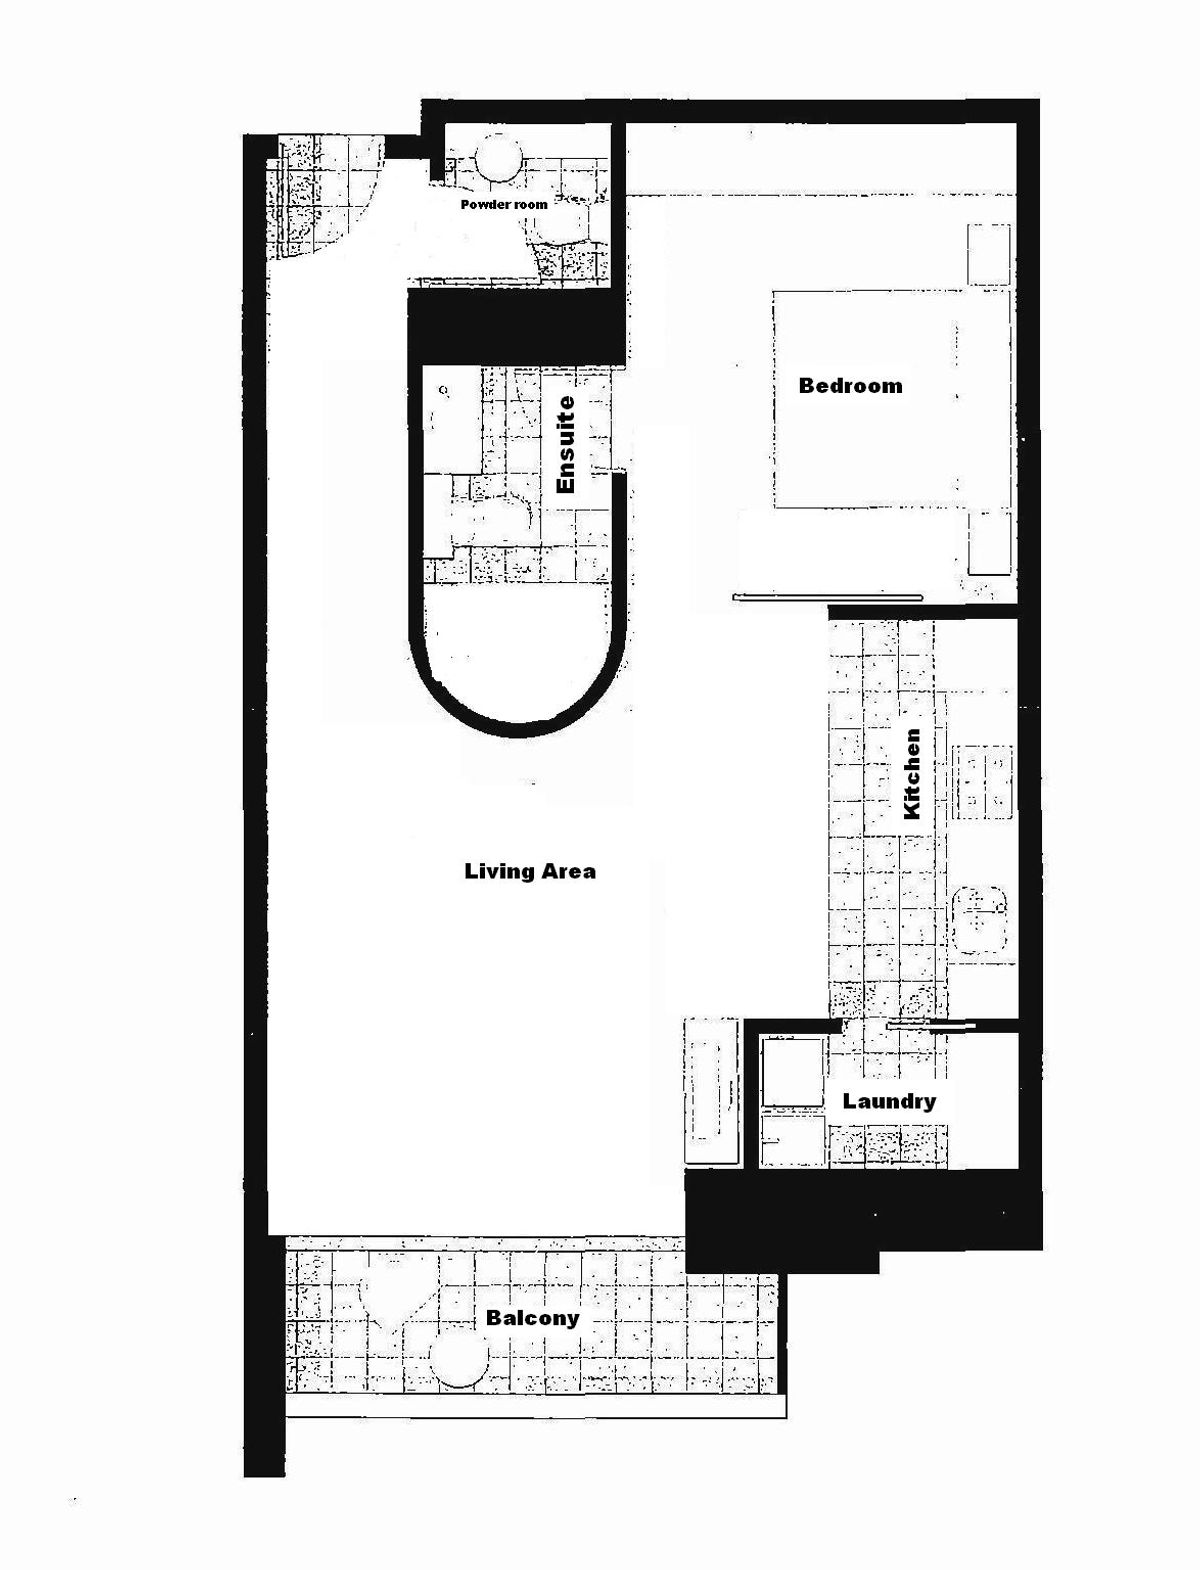 03 floor plan